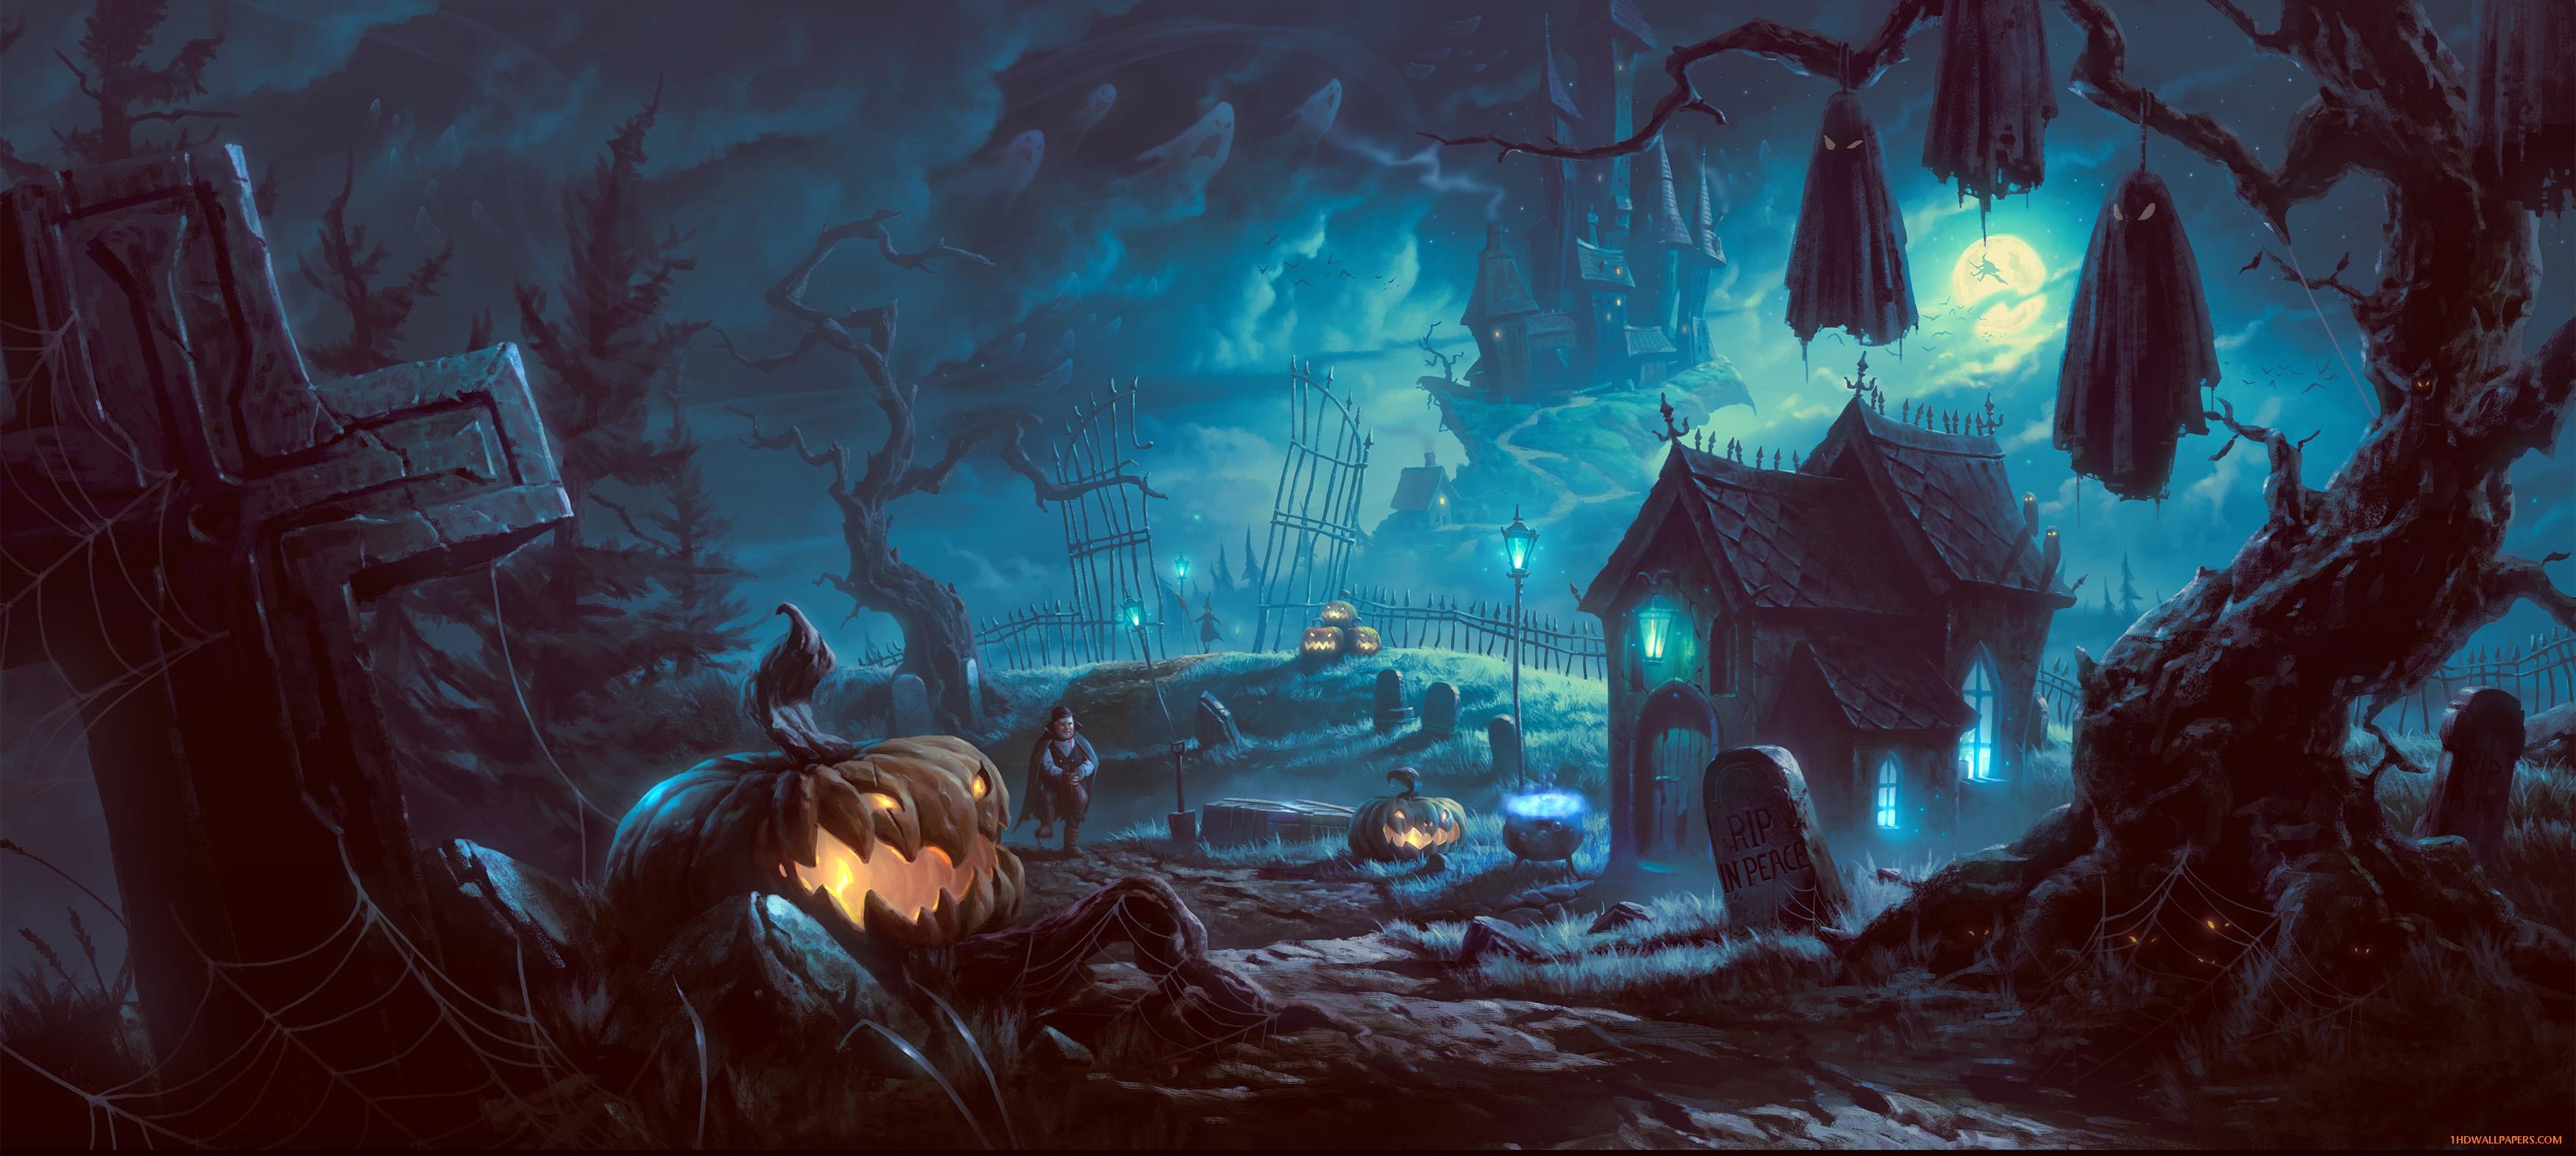 23+ Halloween backgrounds desktop ·① Download free amazing HD